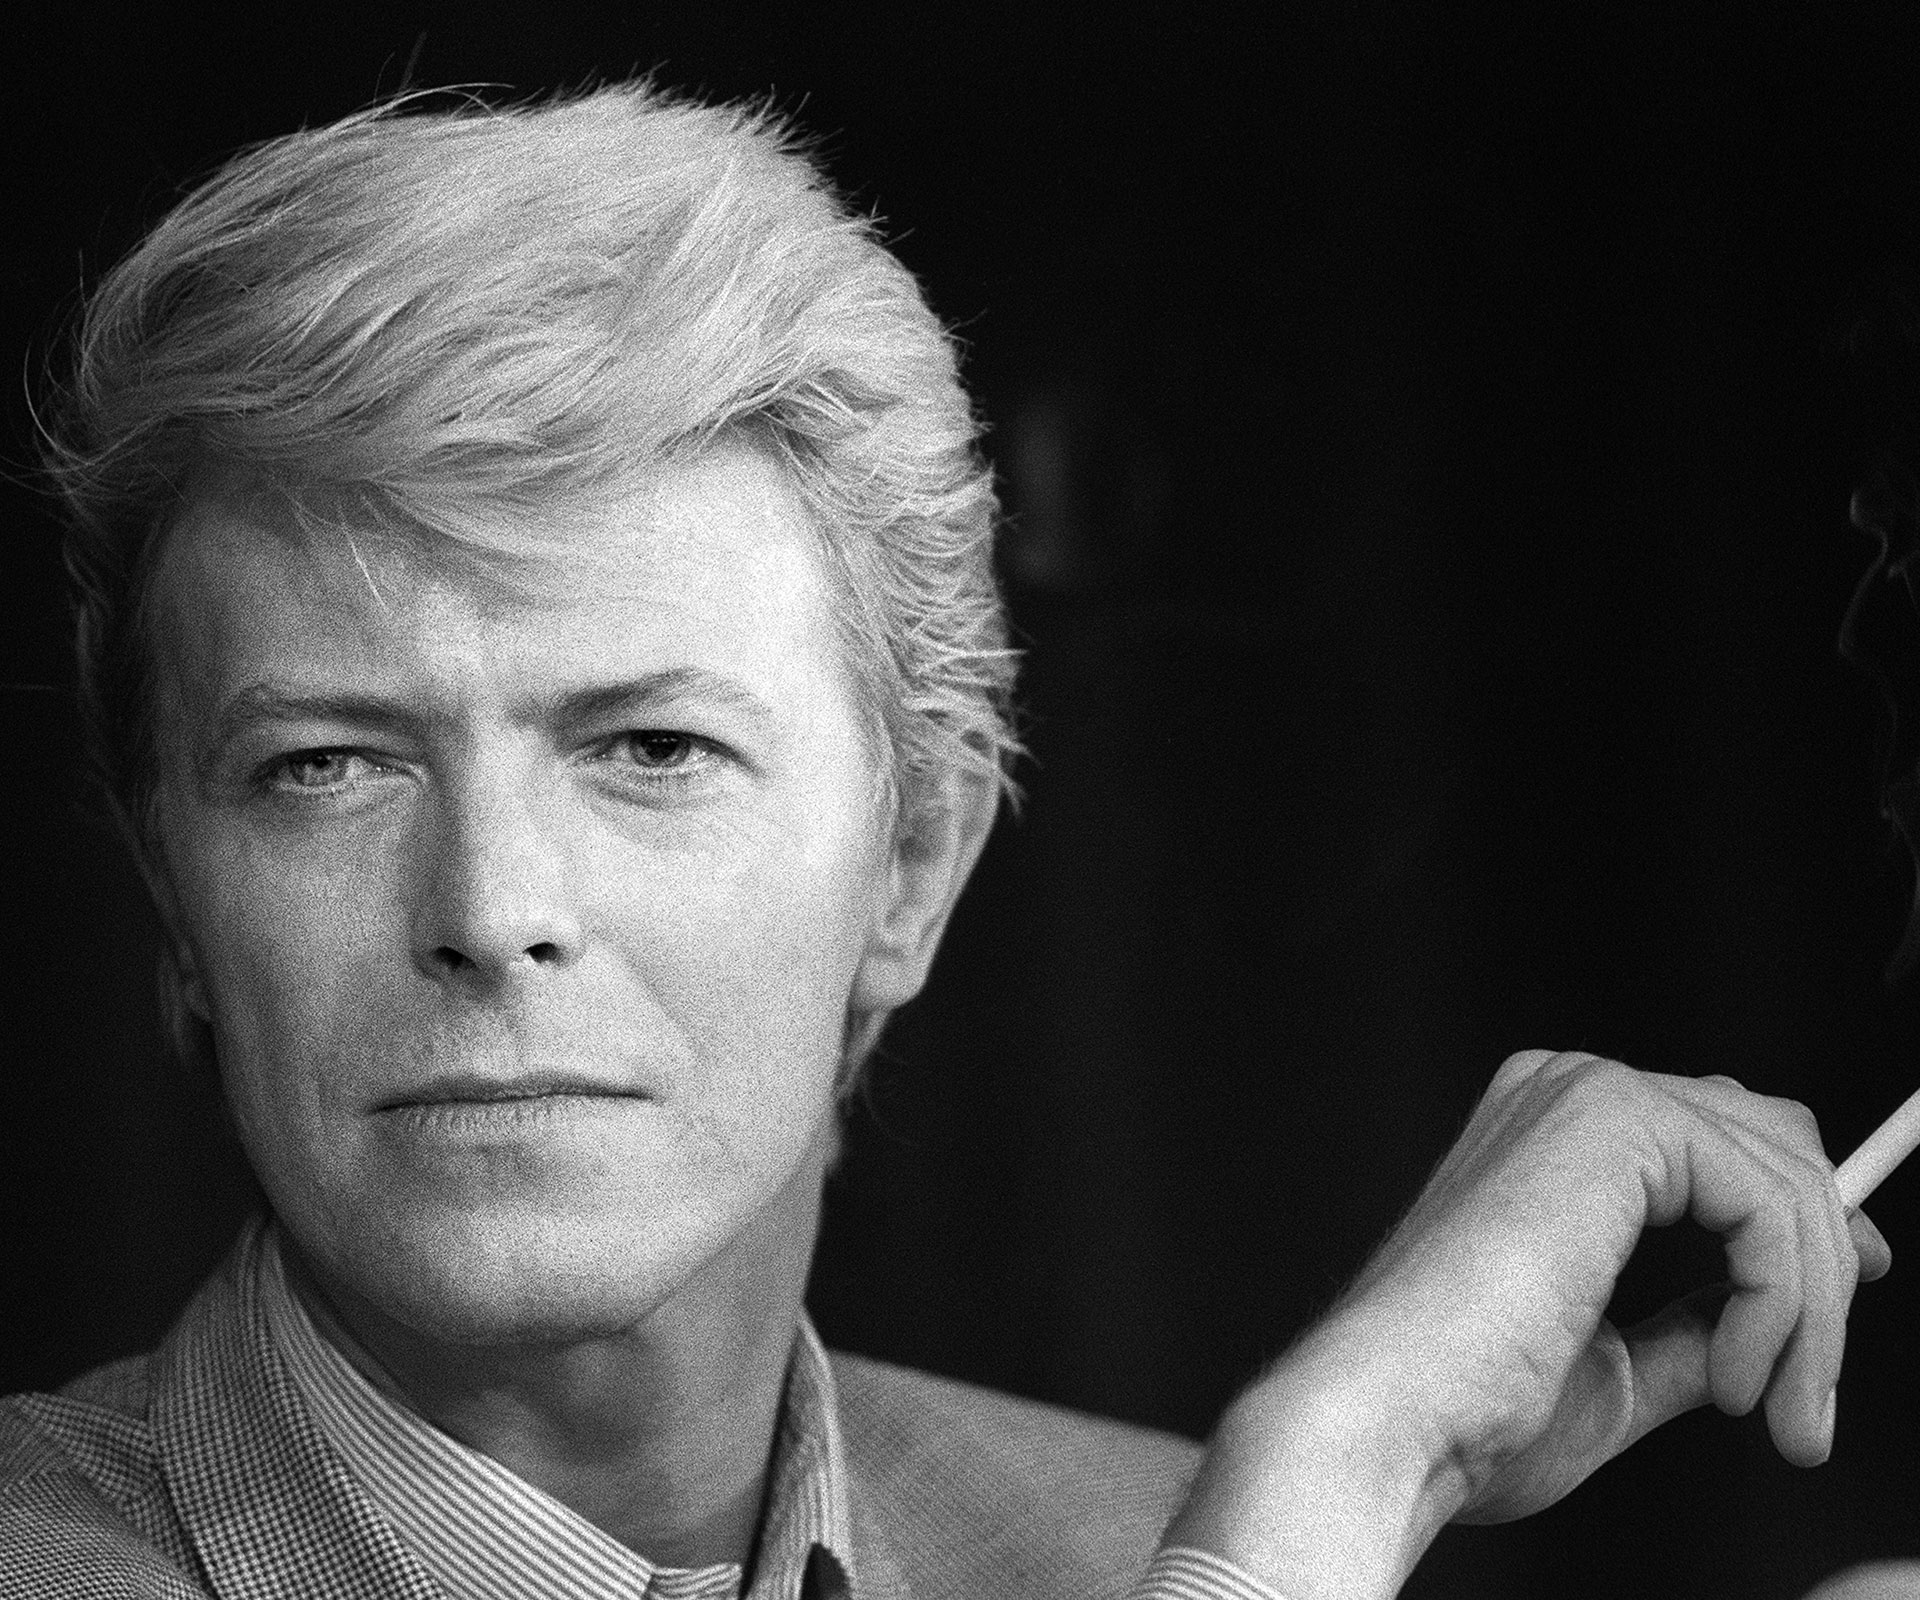 How David Bowie kept his cancer secret